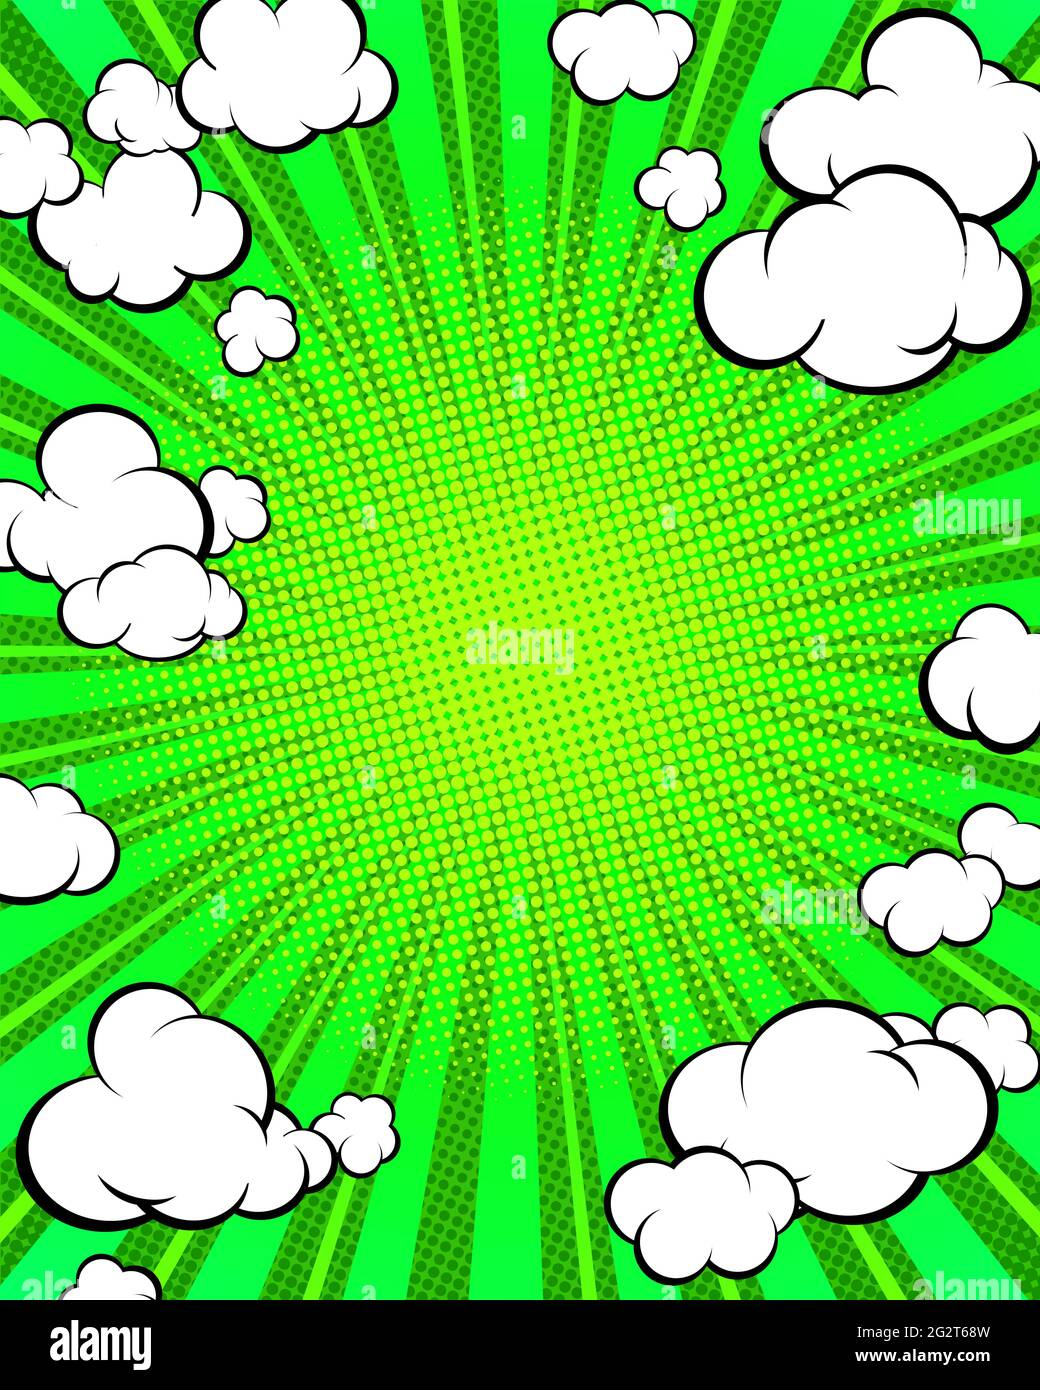 Pop Art vertikale Bannervorlage. Präsentation Ihres Produkts. Grüner Hintergrund mit radialen Strahlen und Wolken. Vektorgrafik. Stock Vektor